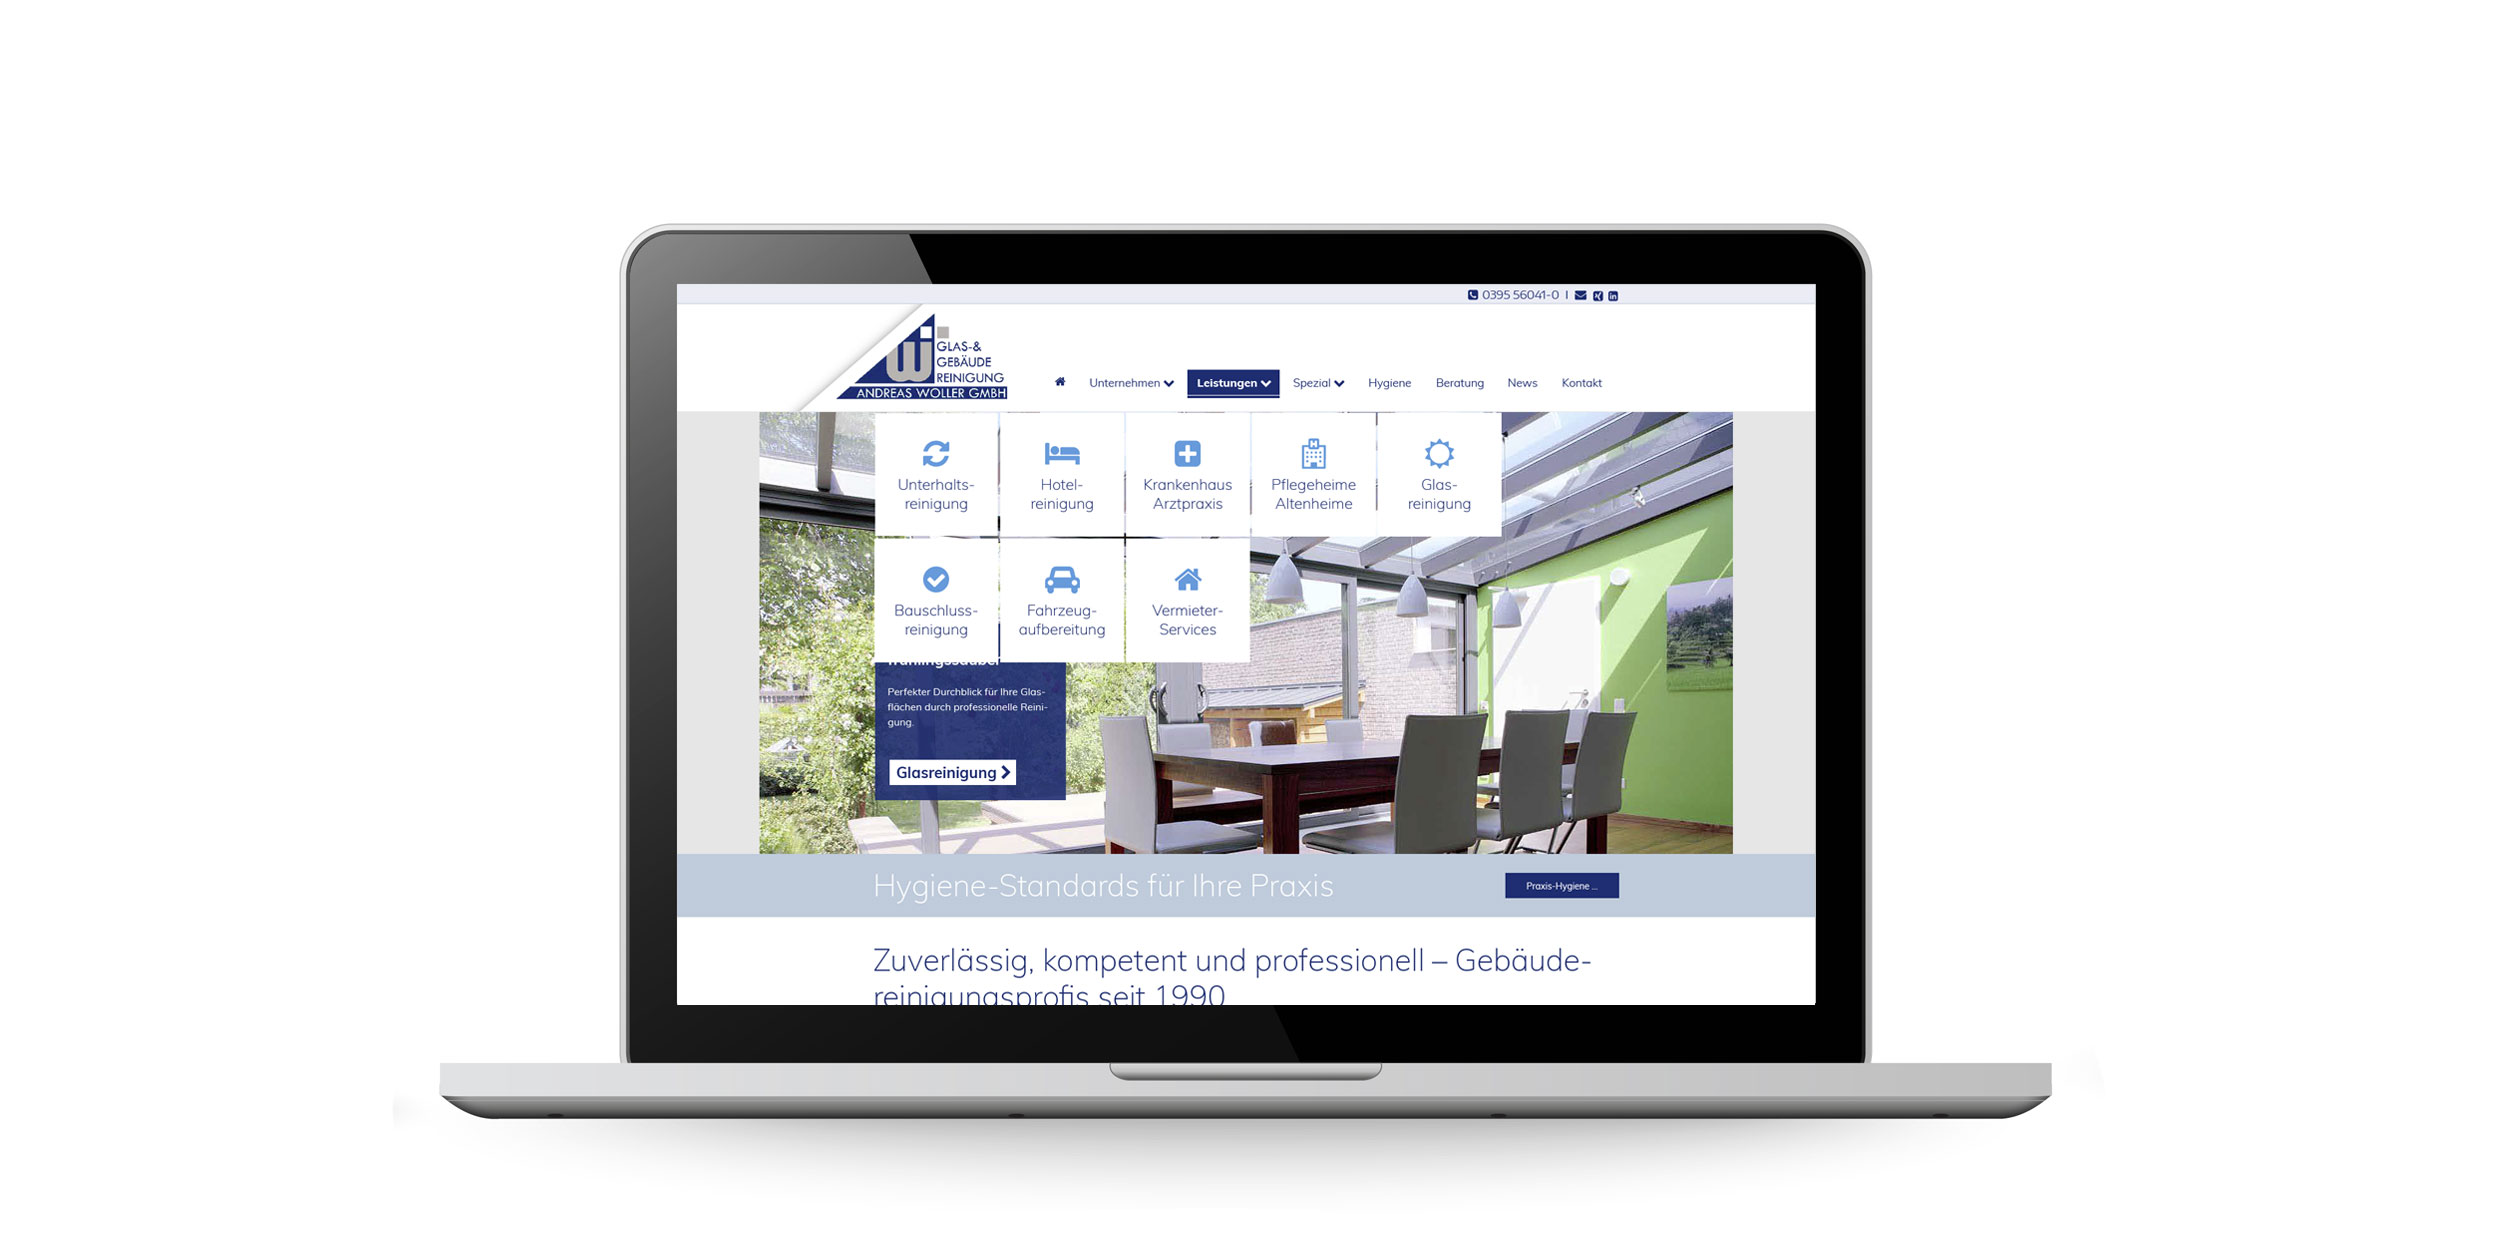 Die Firmenwebsite der Andreas Woller GmbH neu gestaltet